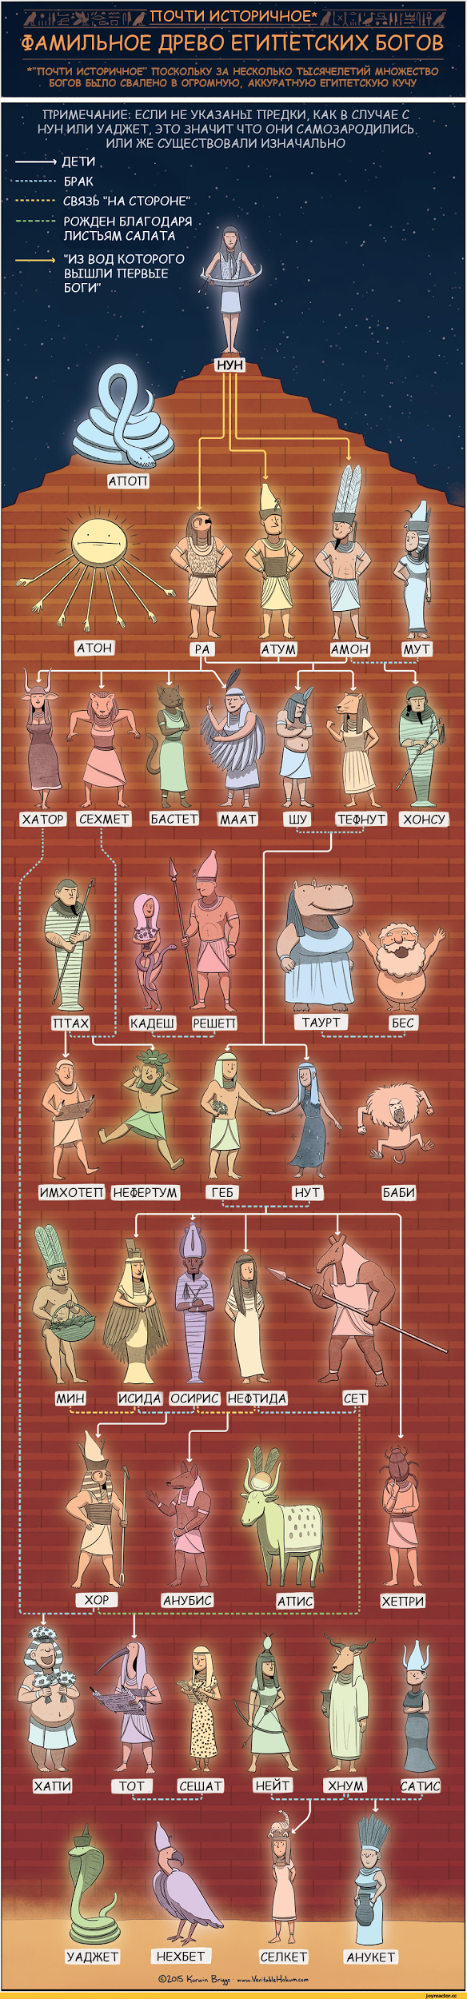 Фамильное древо египетских богов